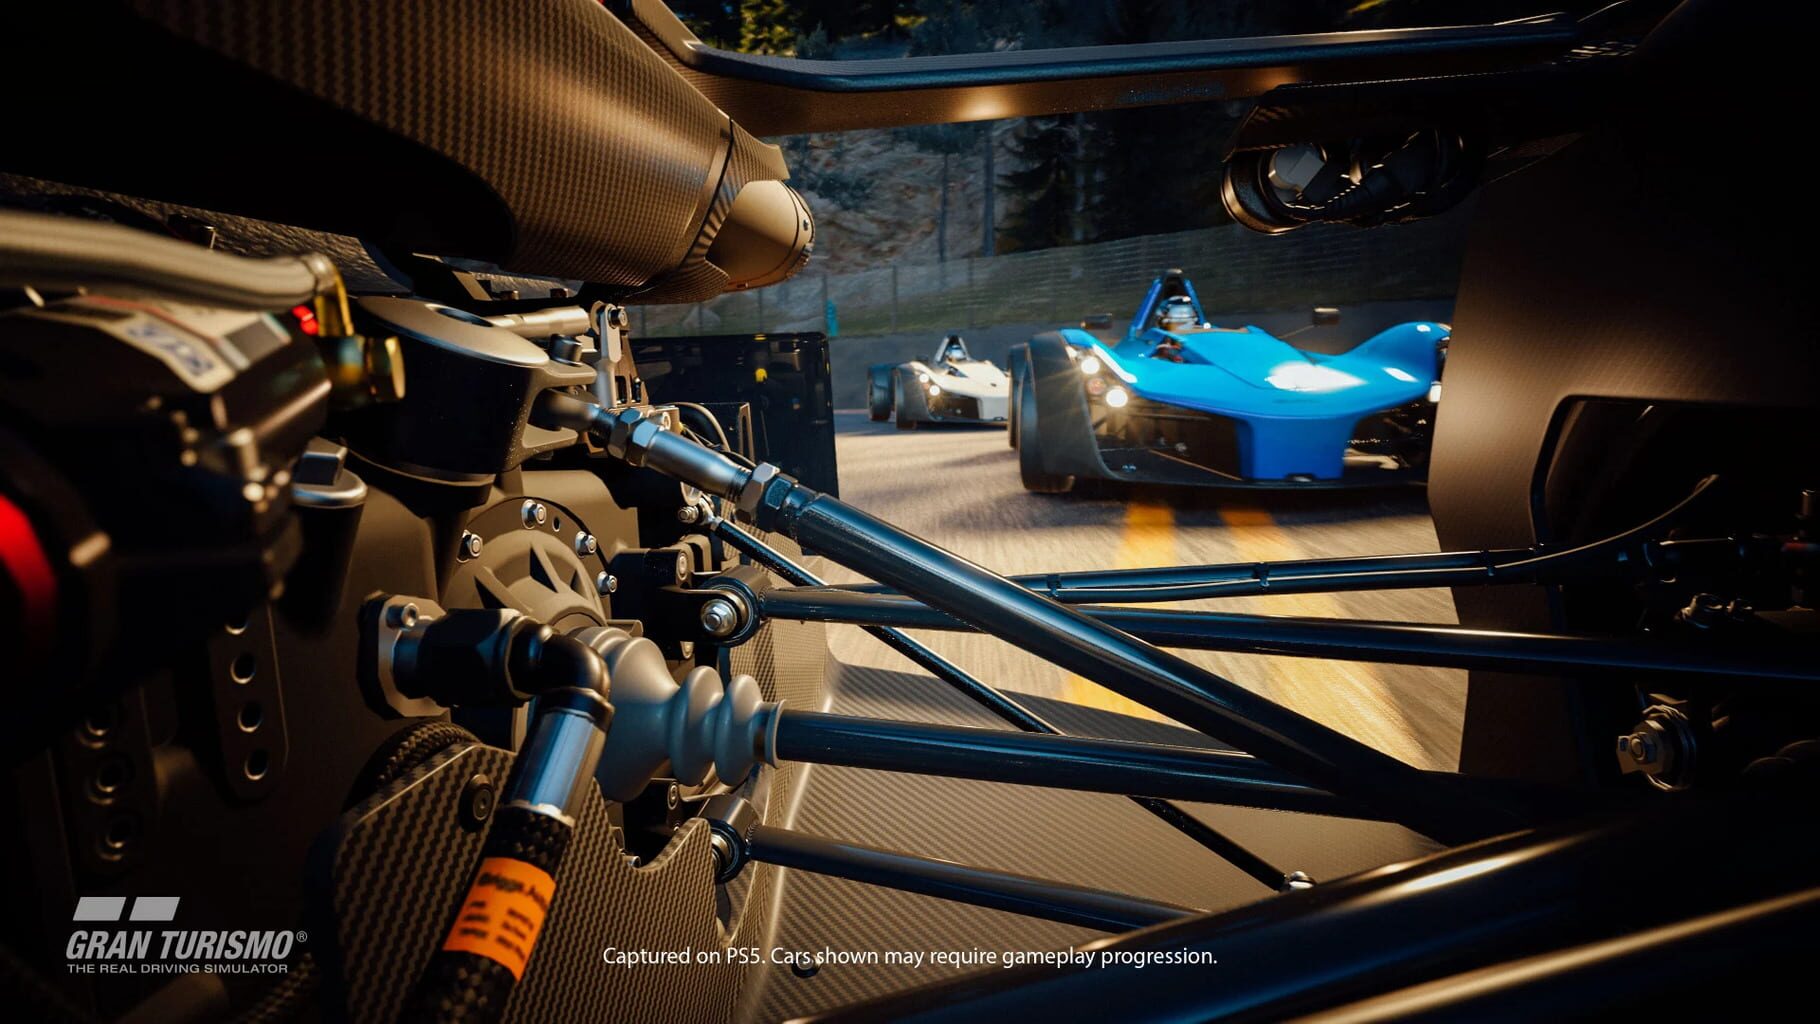 Gran Turismo 7 screenshots